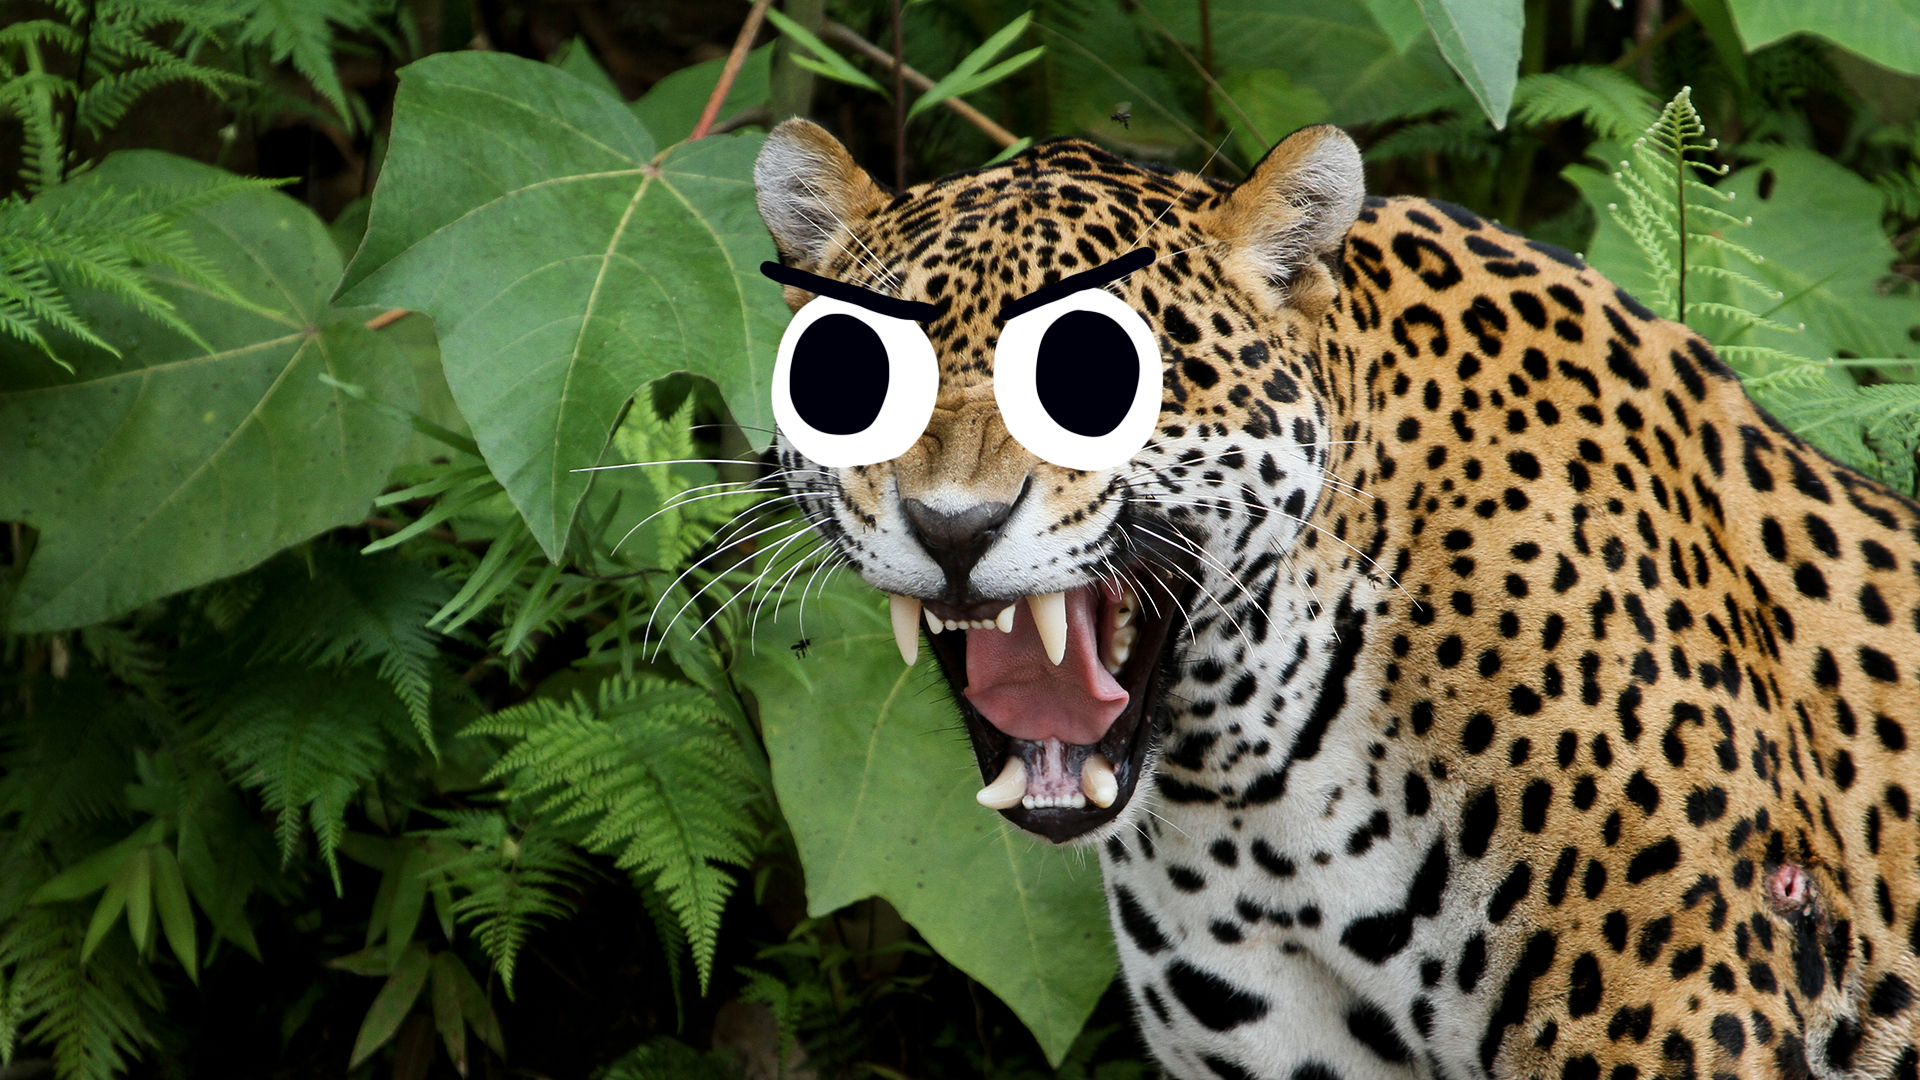 A Jaguar in the jungle